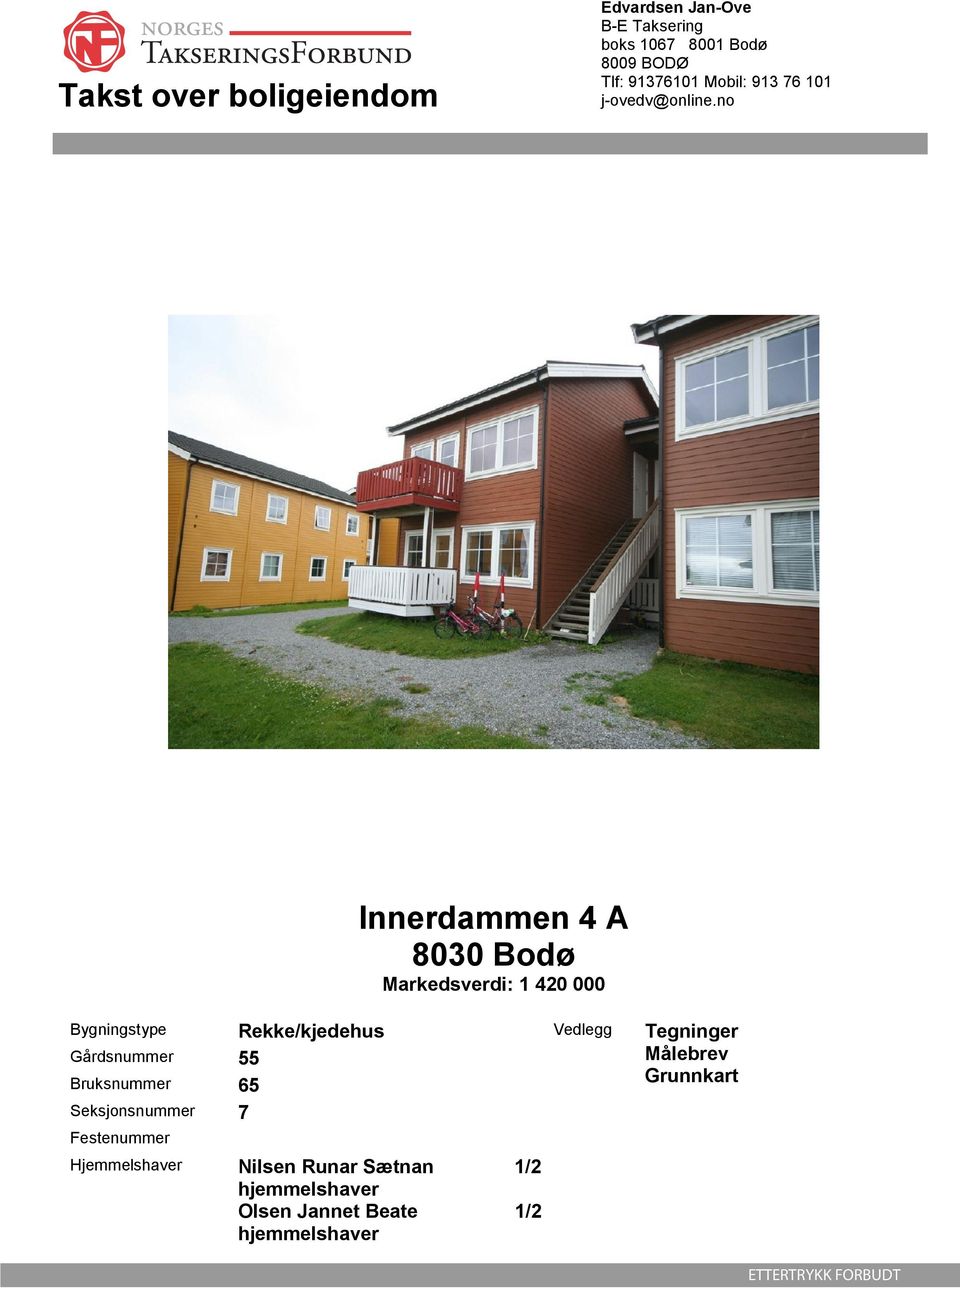 no Innerdammen 4 A 8030 Bodø Markedsverdi: 1 420 000 Bygningstype Rekke/kjedehus Vedlegg